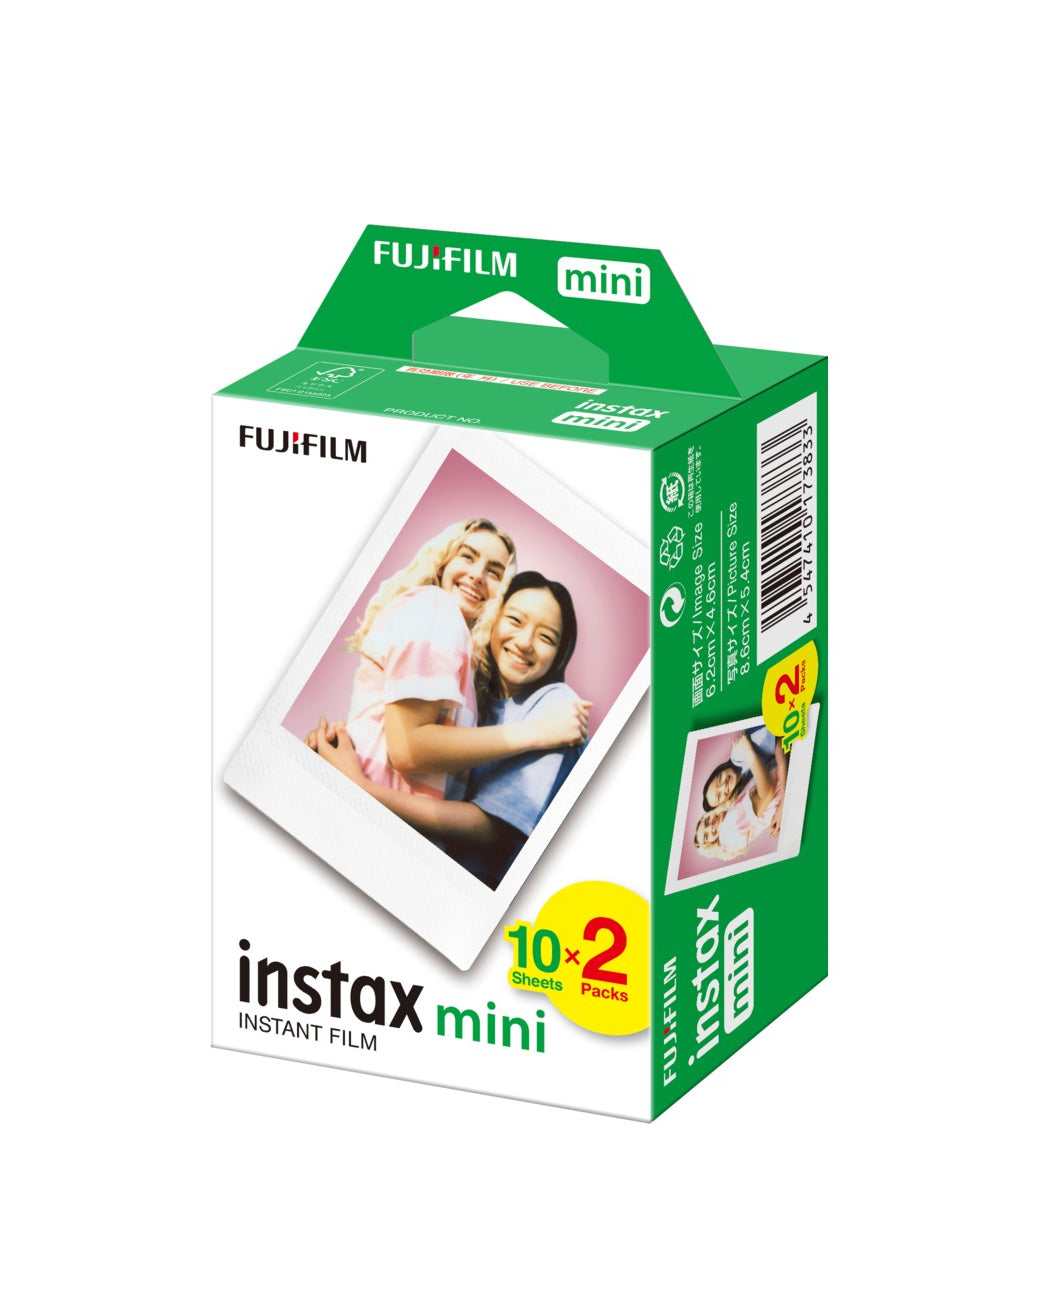 Fujifilm Instax Mini Film Instax Film Twin Pack 20 Sheets